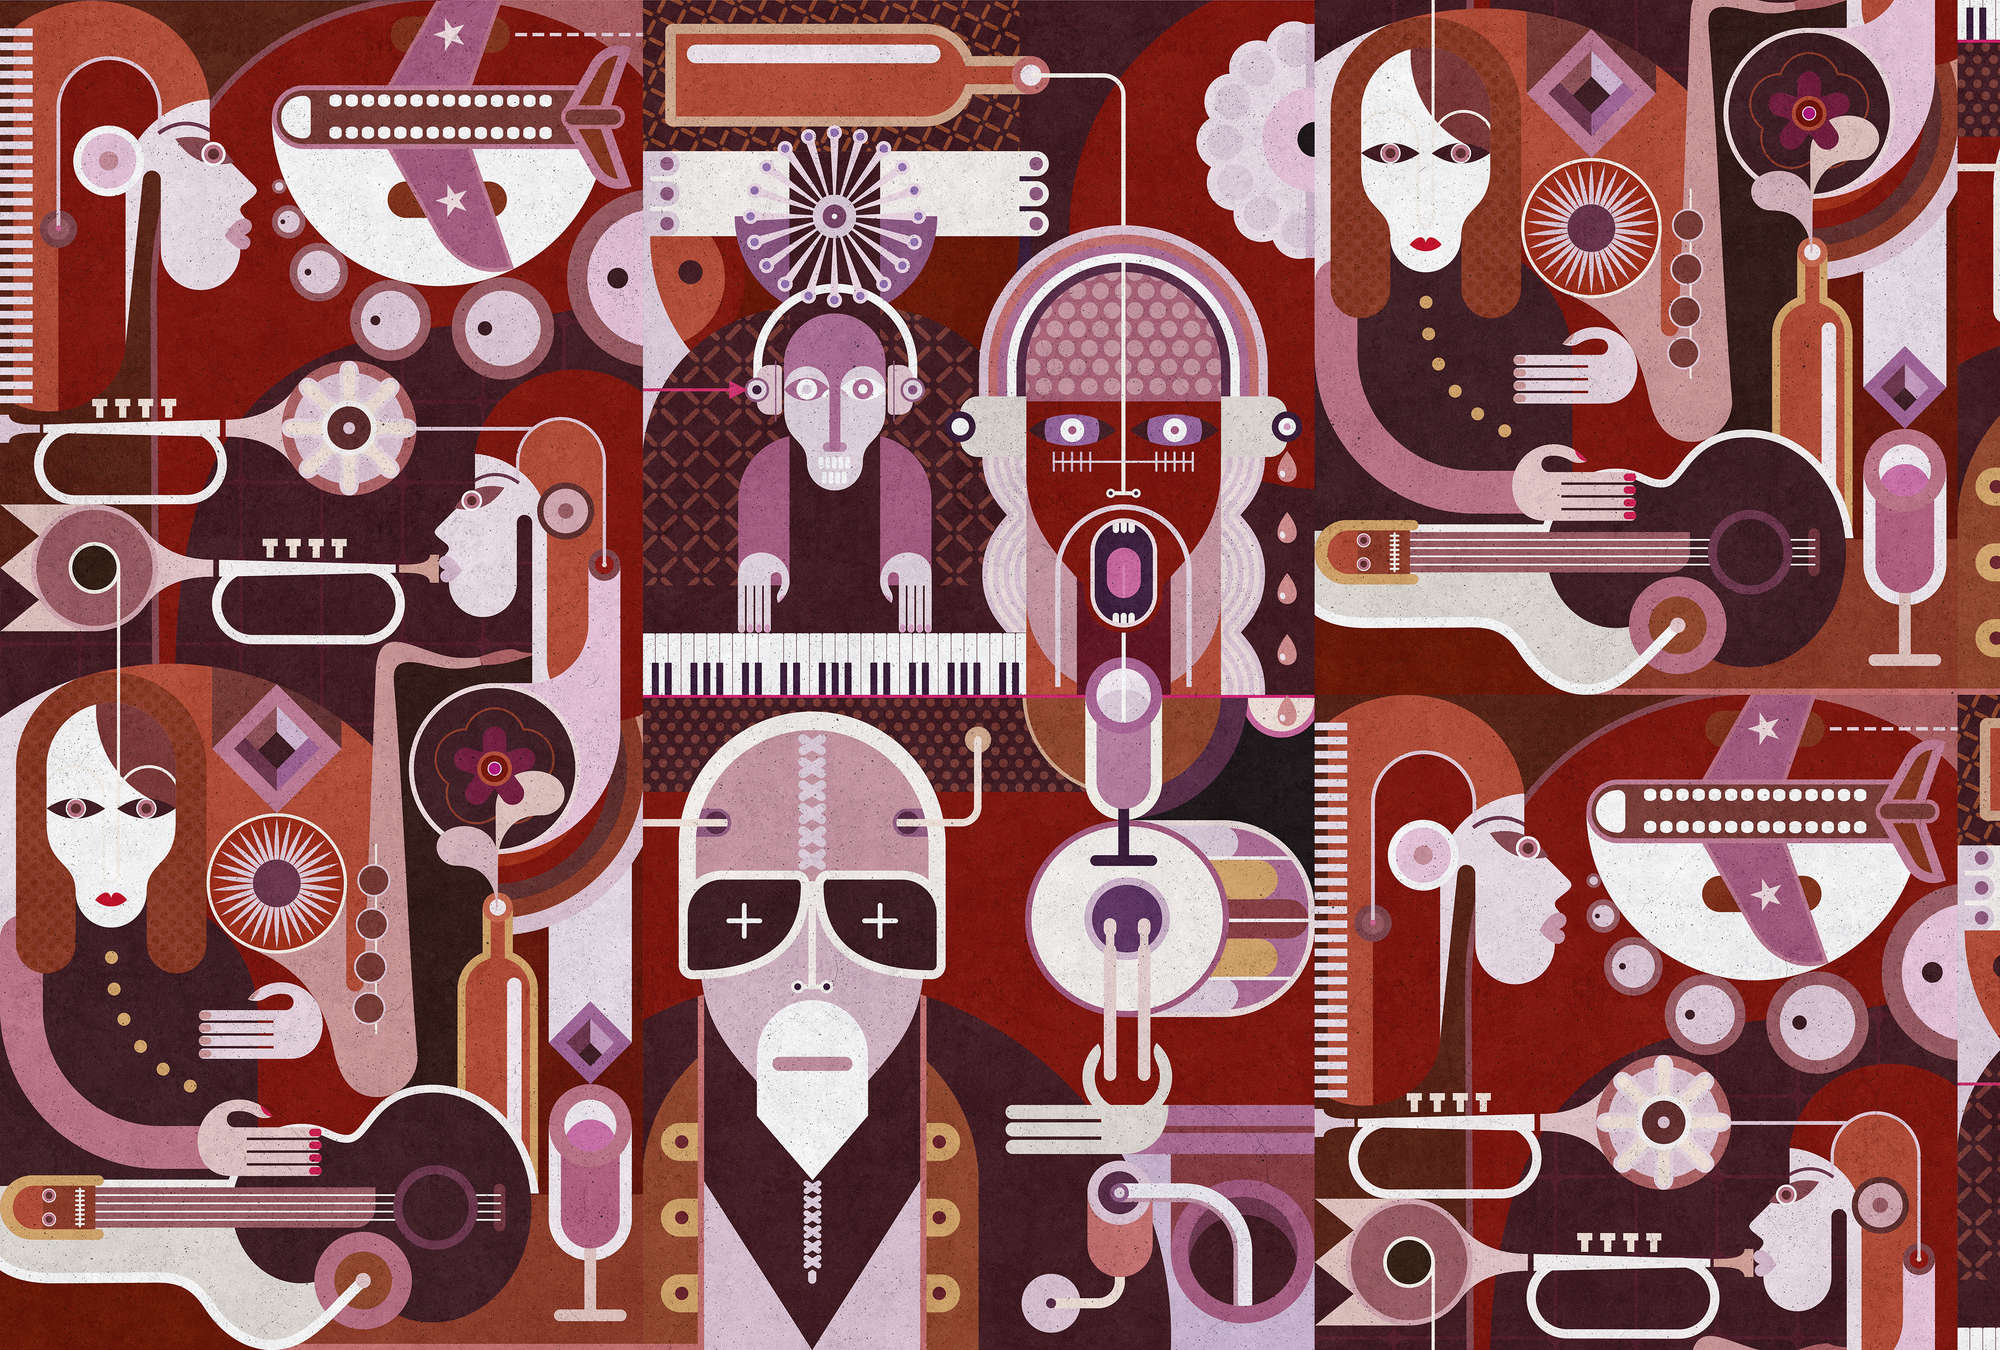             Wall of sound 2 - Papel pintado abstracto con caras en estructura de hormigón - Gris, Rosa | Premium liso no tejido
        